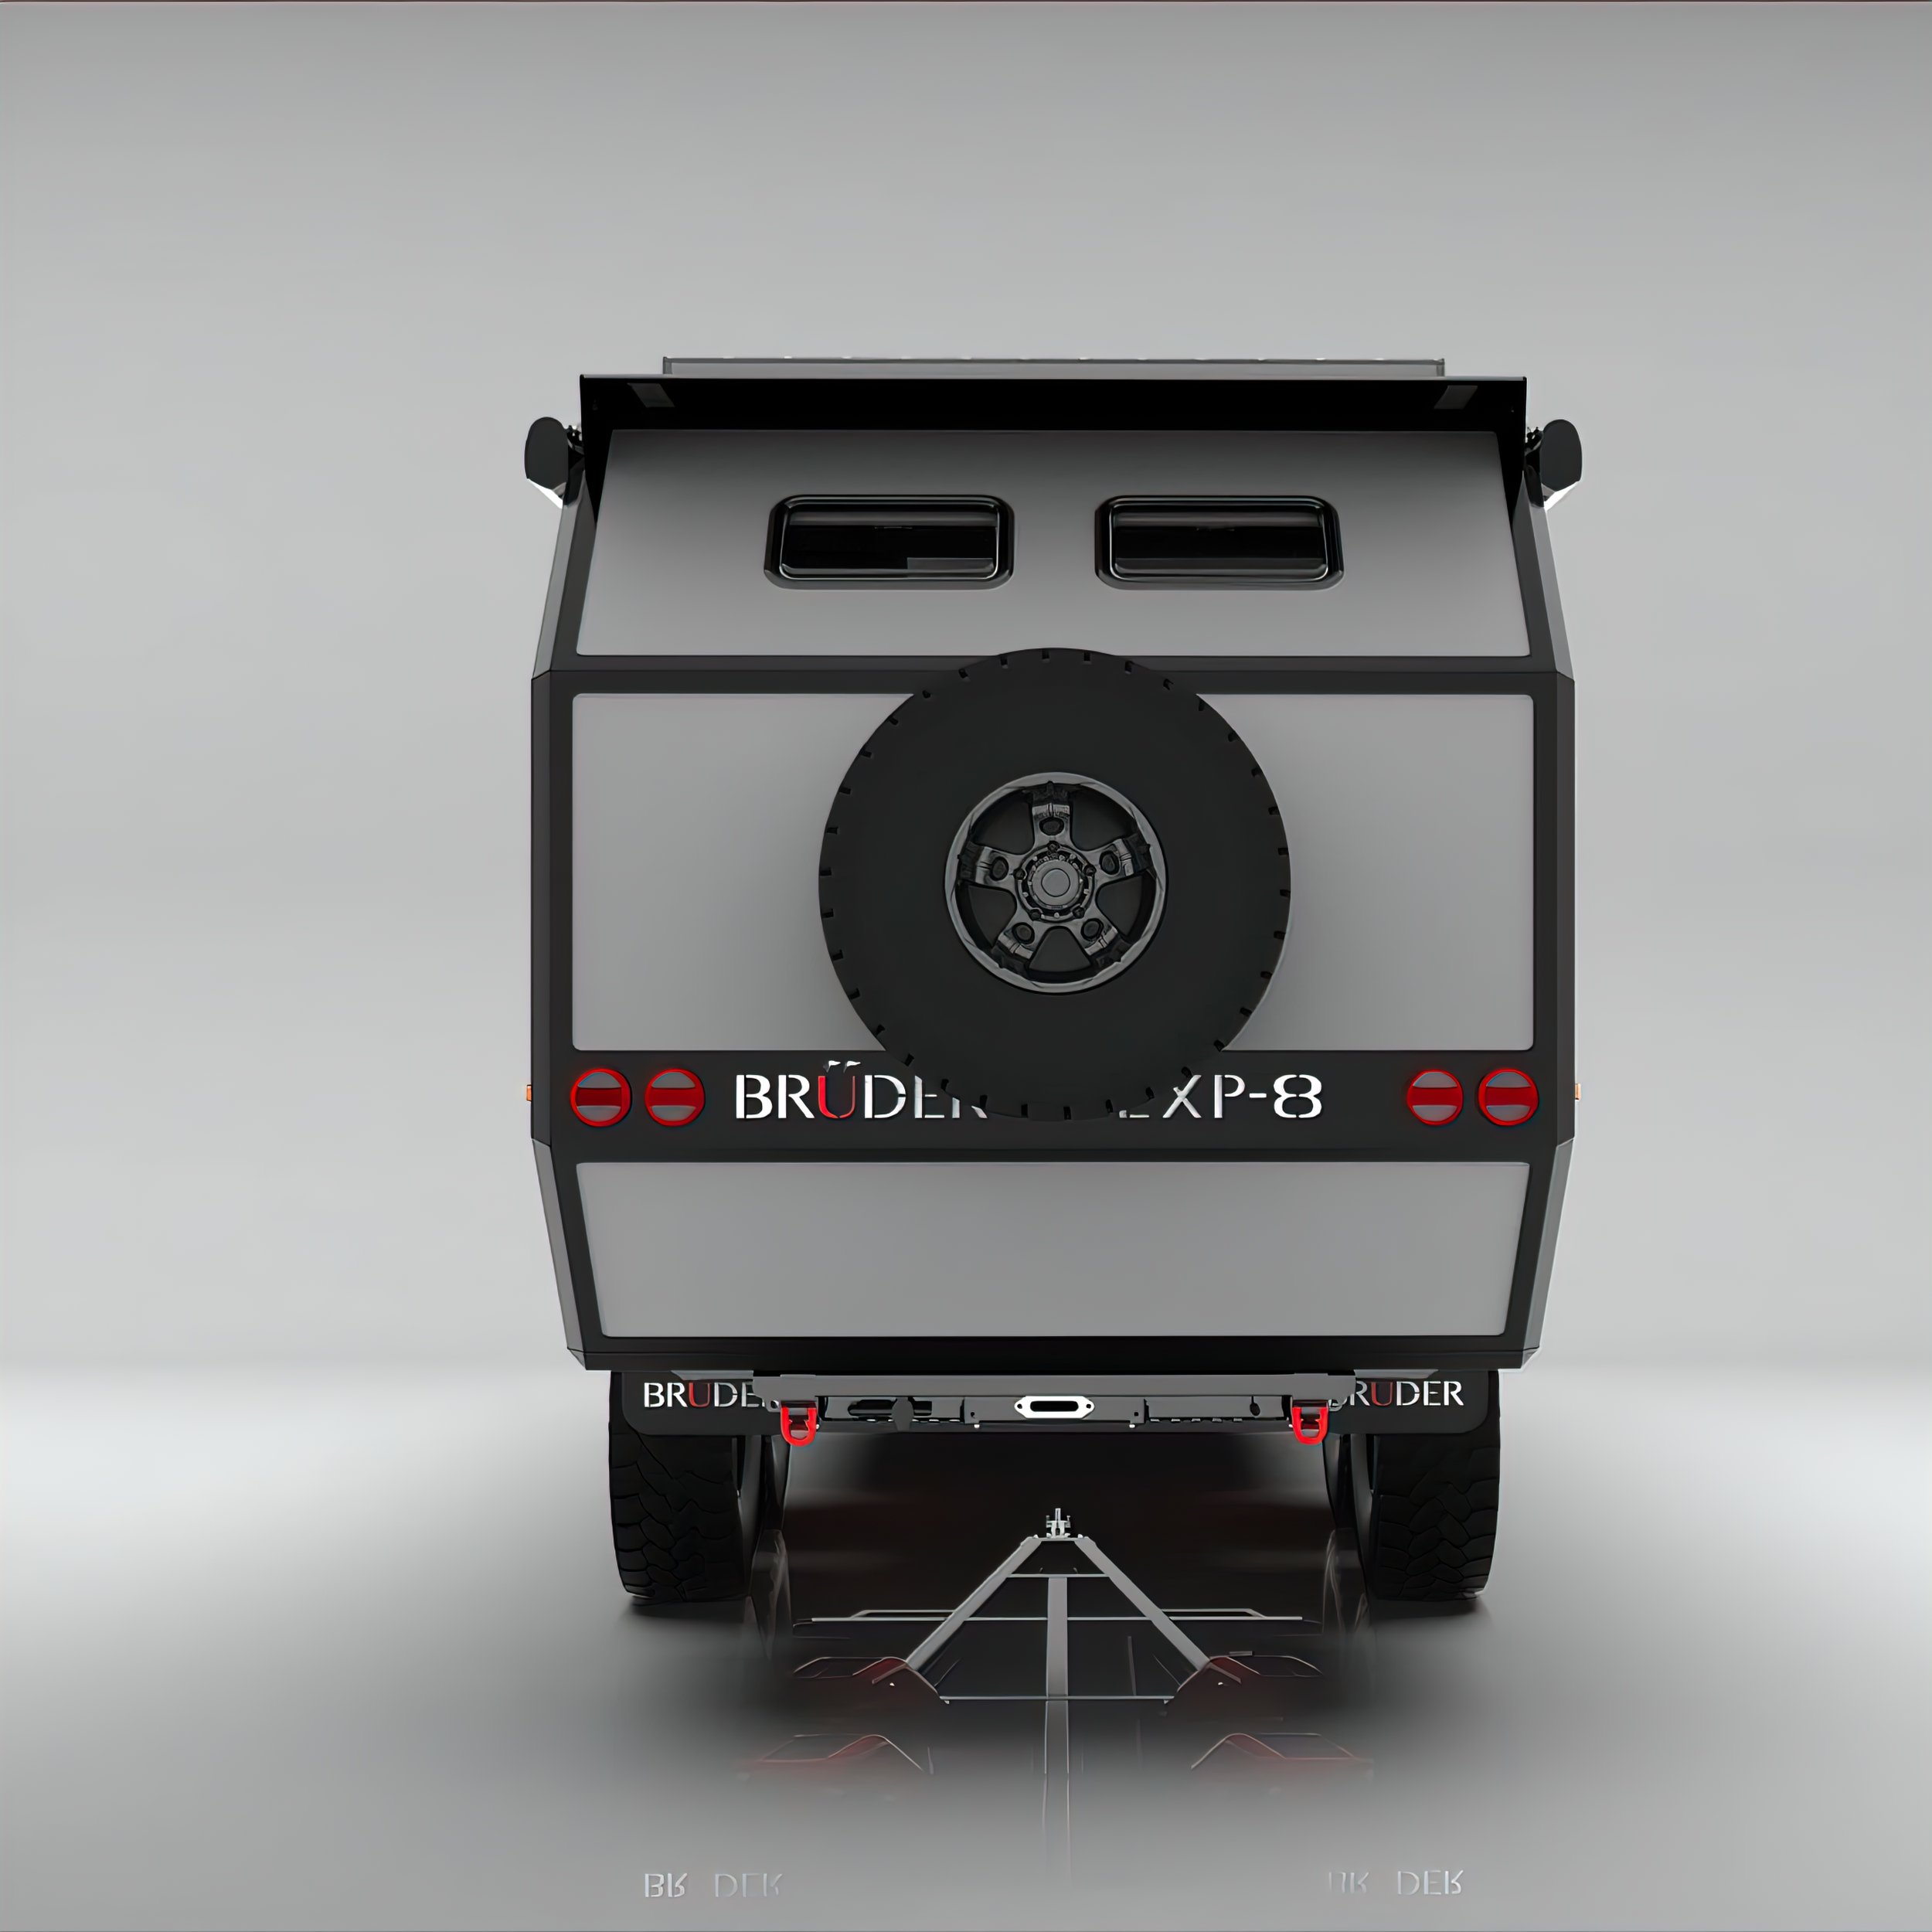 Bruder EXP-8 Is the Ultimate Off-Road Camper Trailer for Overlanding